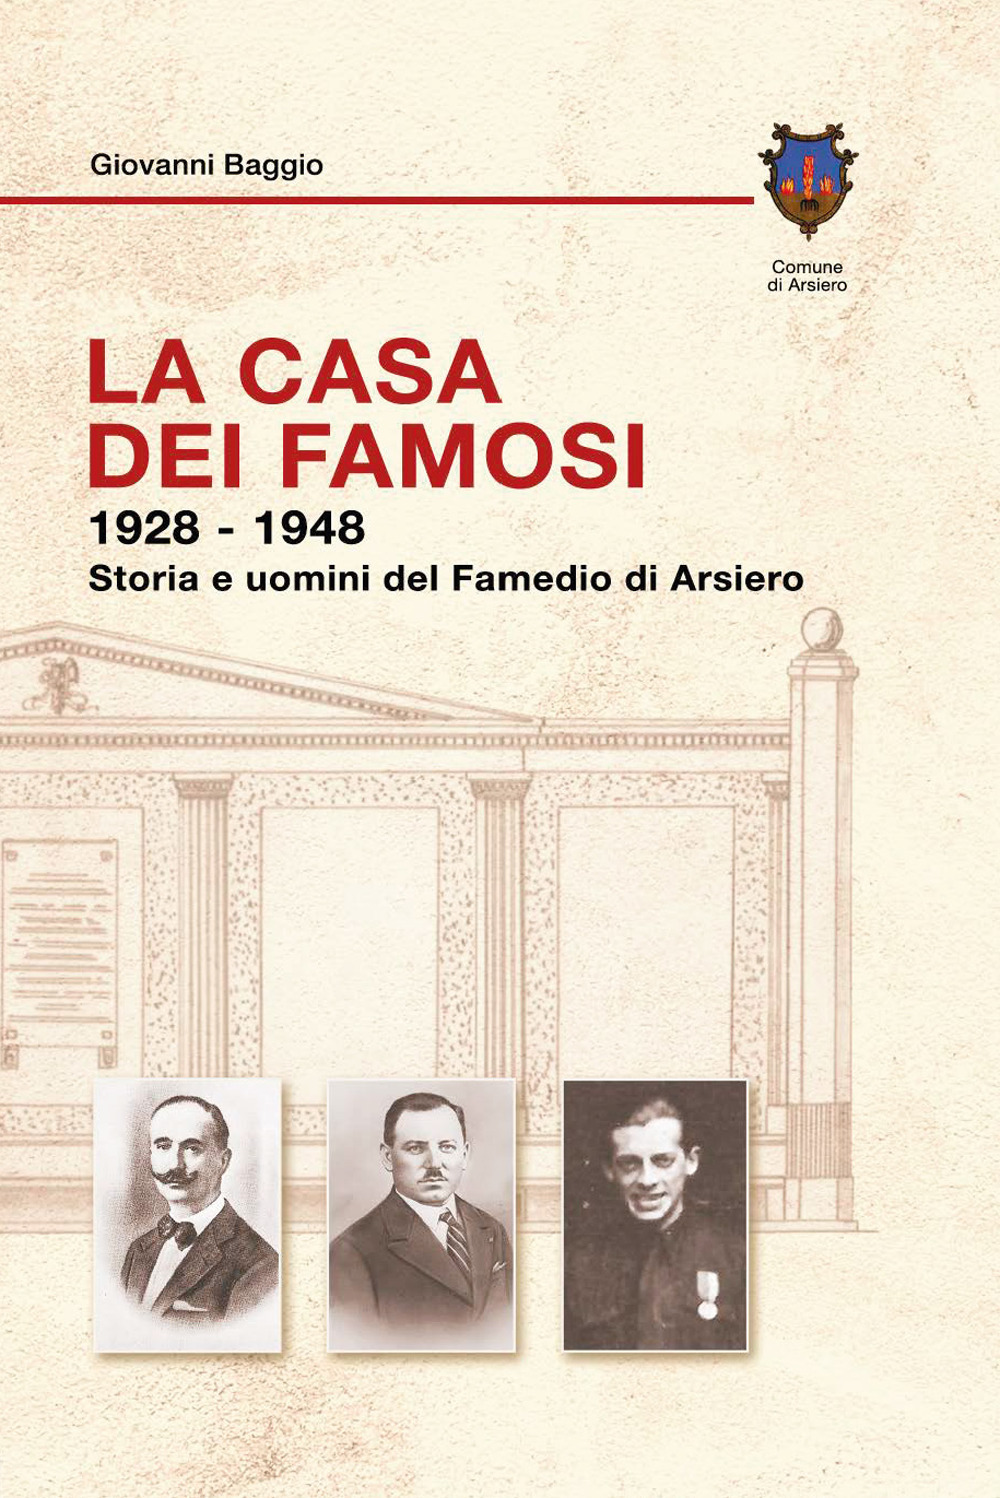 La casa dei famosi 1928-1948. Storia e uomini del Famedio di Arsiero